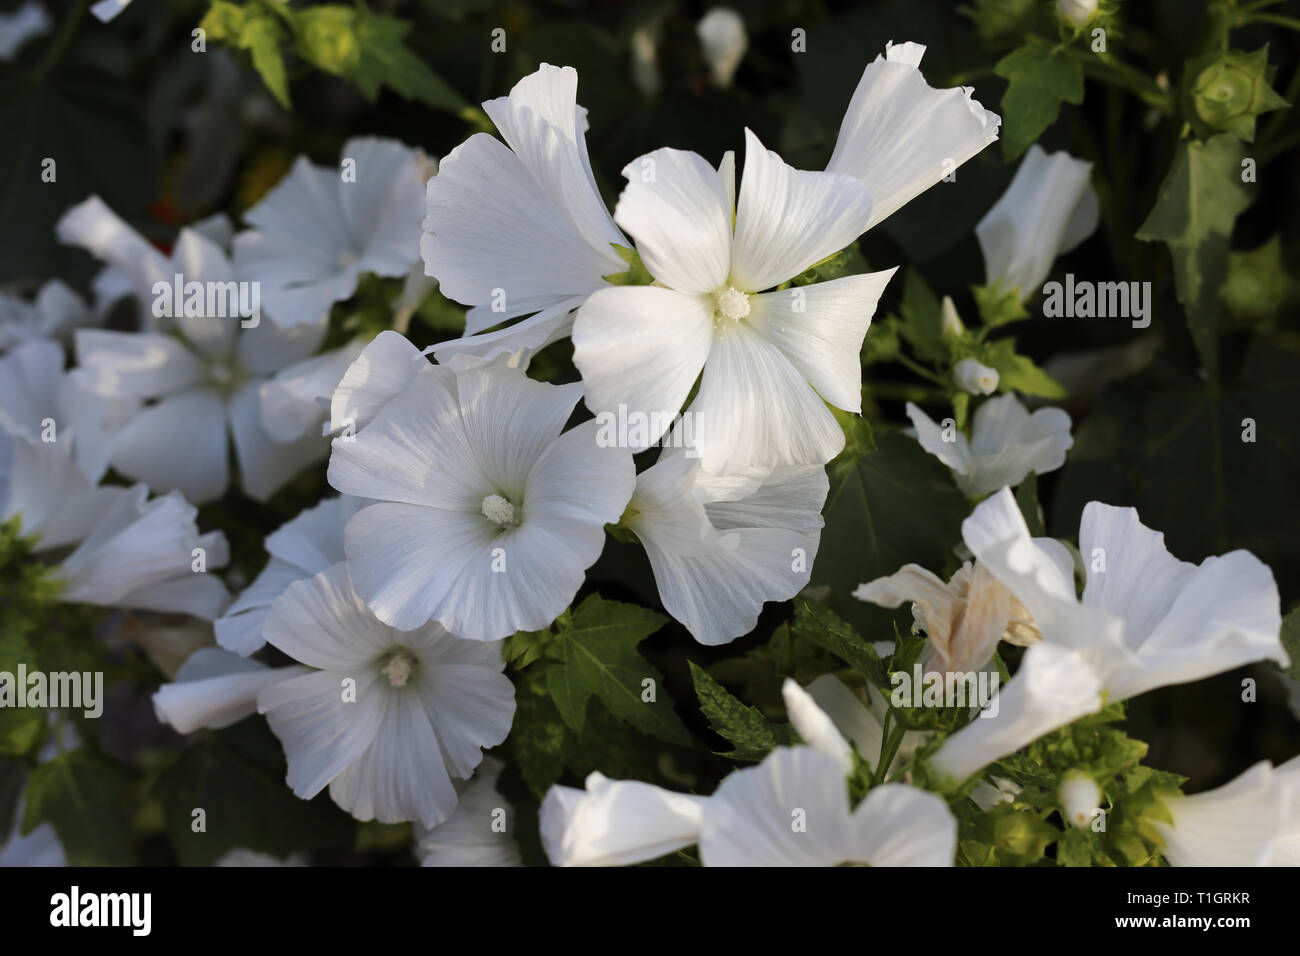 Splendida fioritura fiori bianchi con alcune foglie verdi fotografato durante una soleggiata giornata estiva. Bella fiori freschi rappresentano la bellezza della natura. Foto Stock